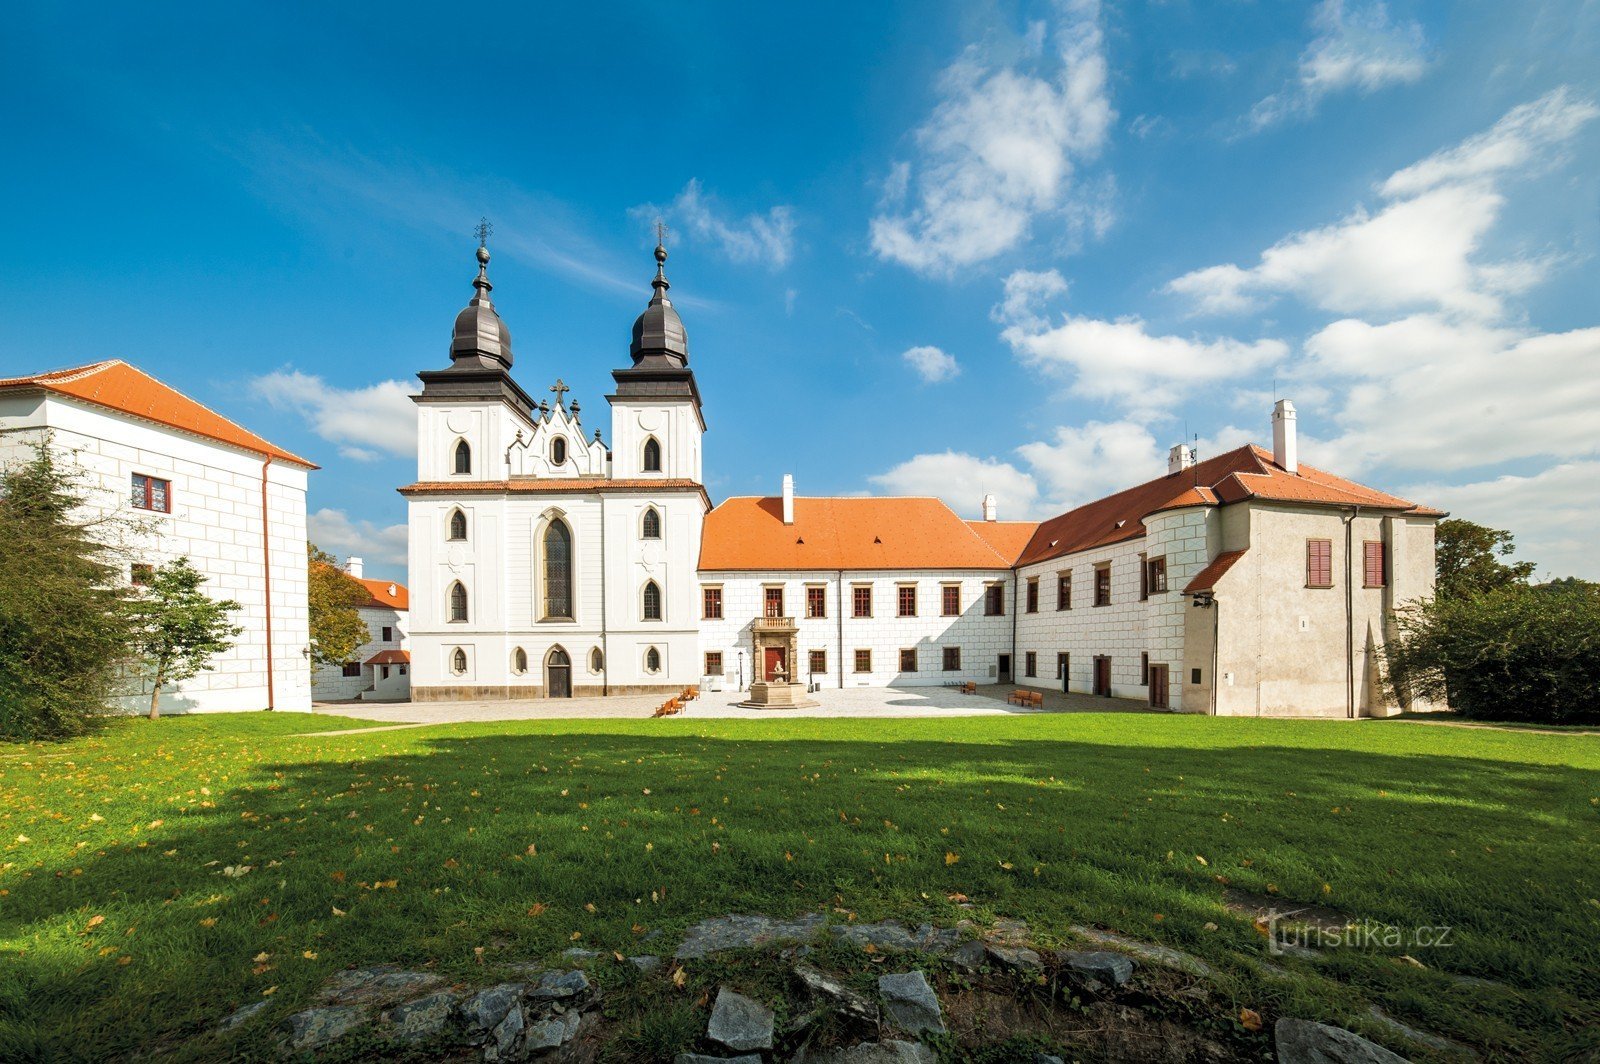 Castelul Třebíč prezintă o noutate – tururi costumate